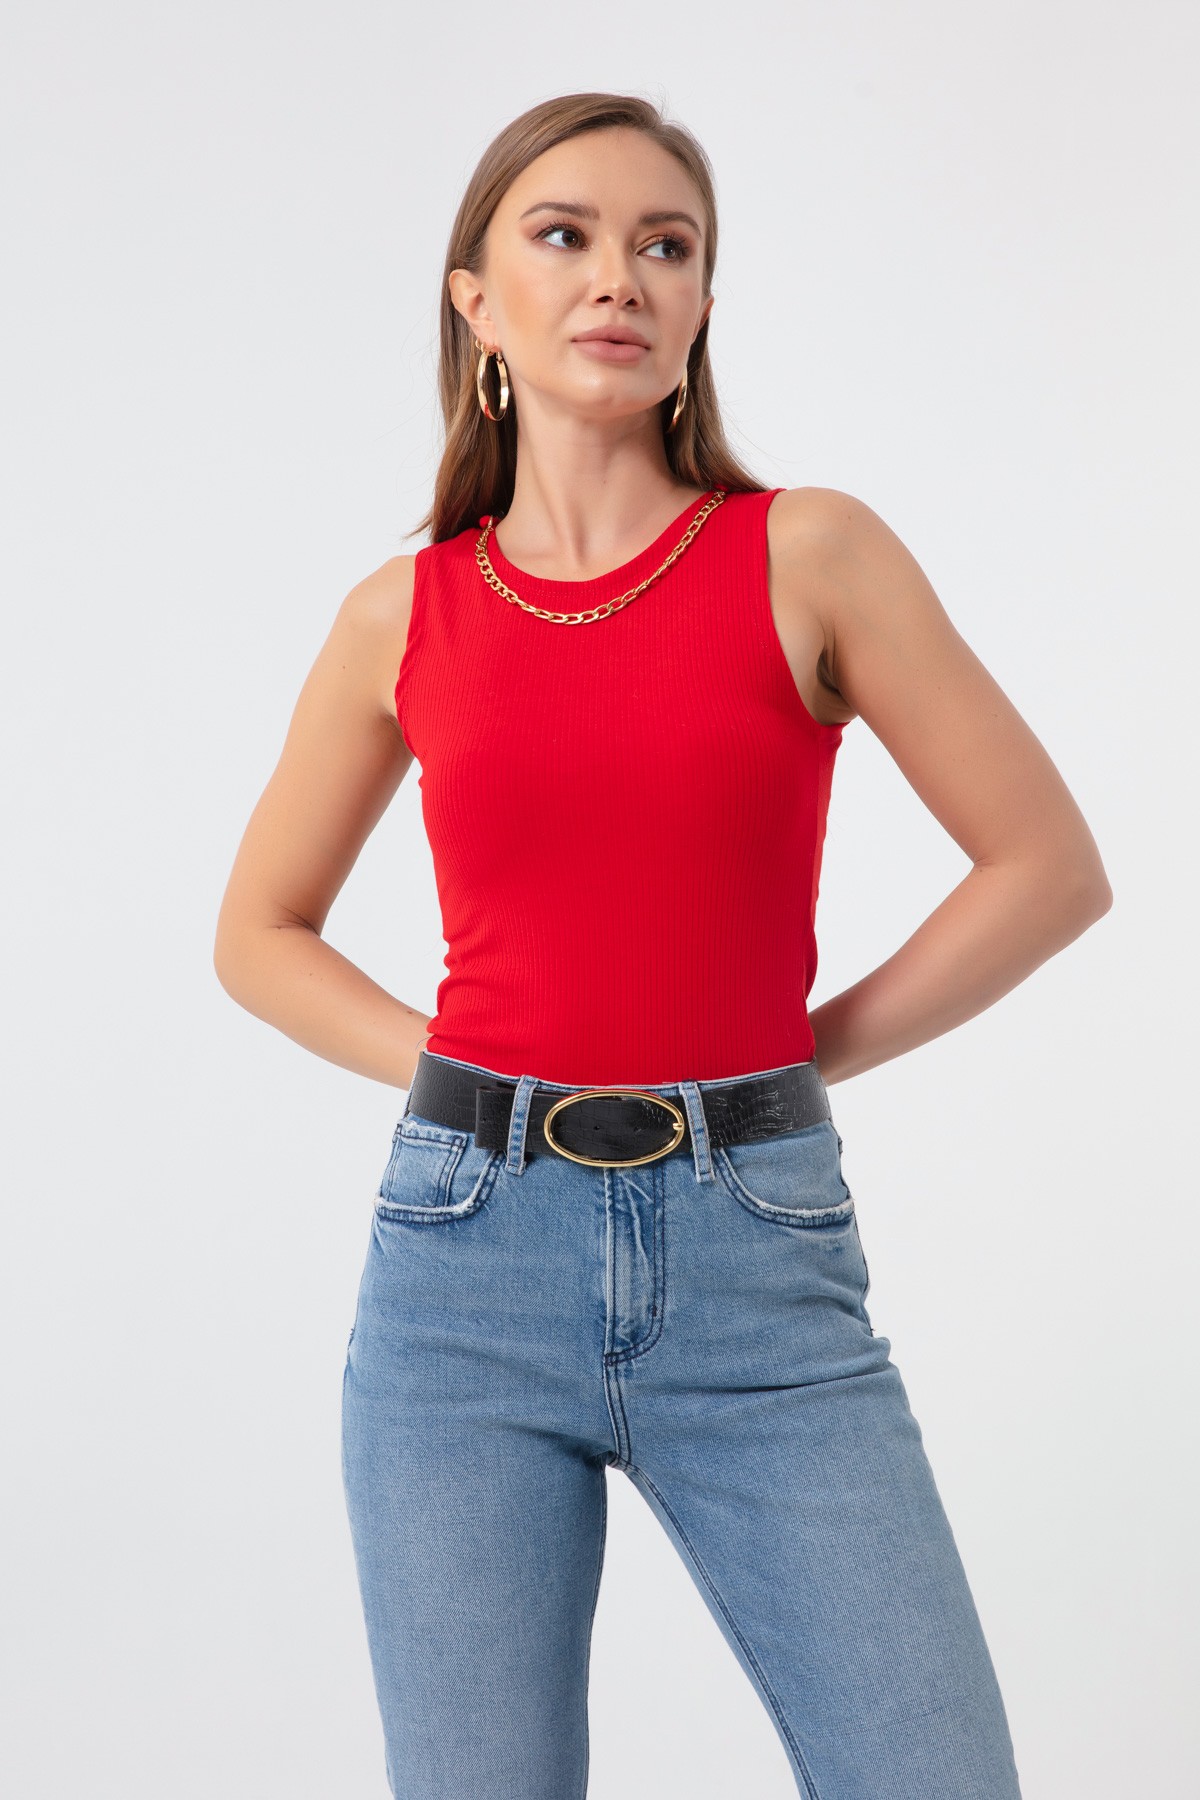 Kadın Zincir Kolyeli Örme Bluz - Kırmızı